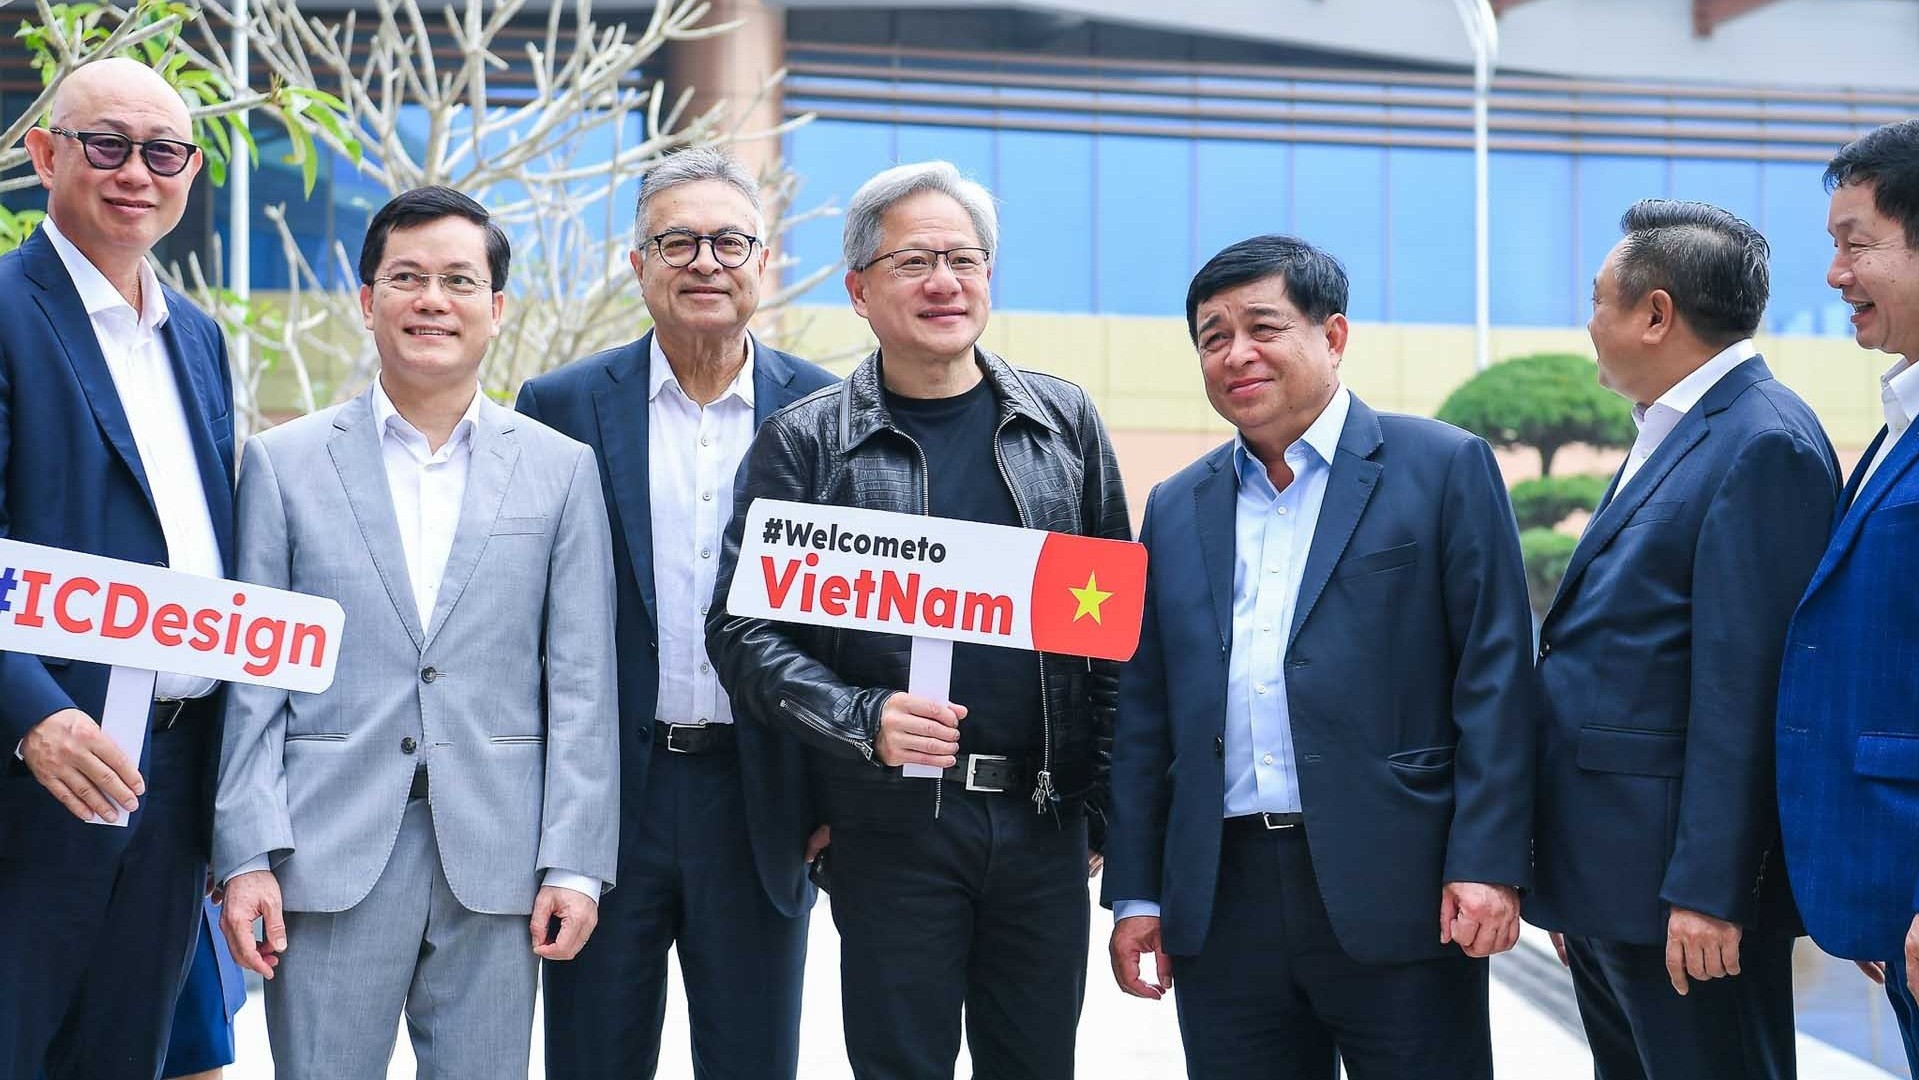 Ngoại giao kinh tế tạo điều kiện để Việt Nam thu hút nhiều tập đoàn lớn